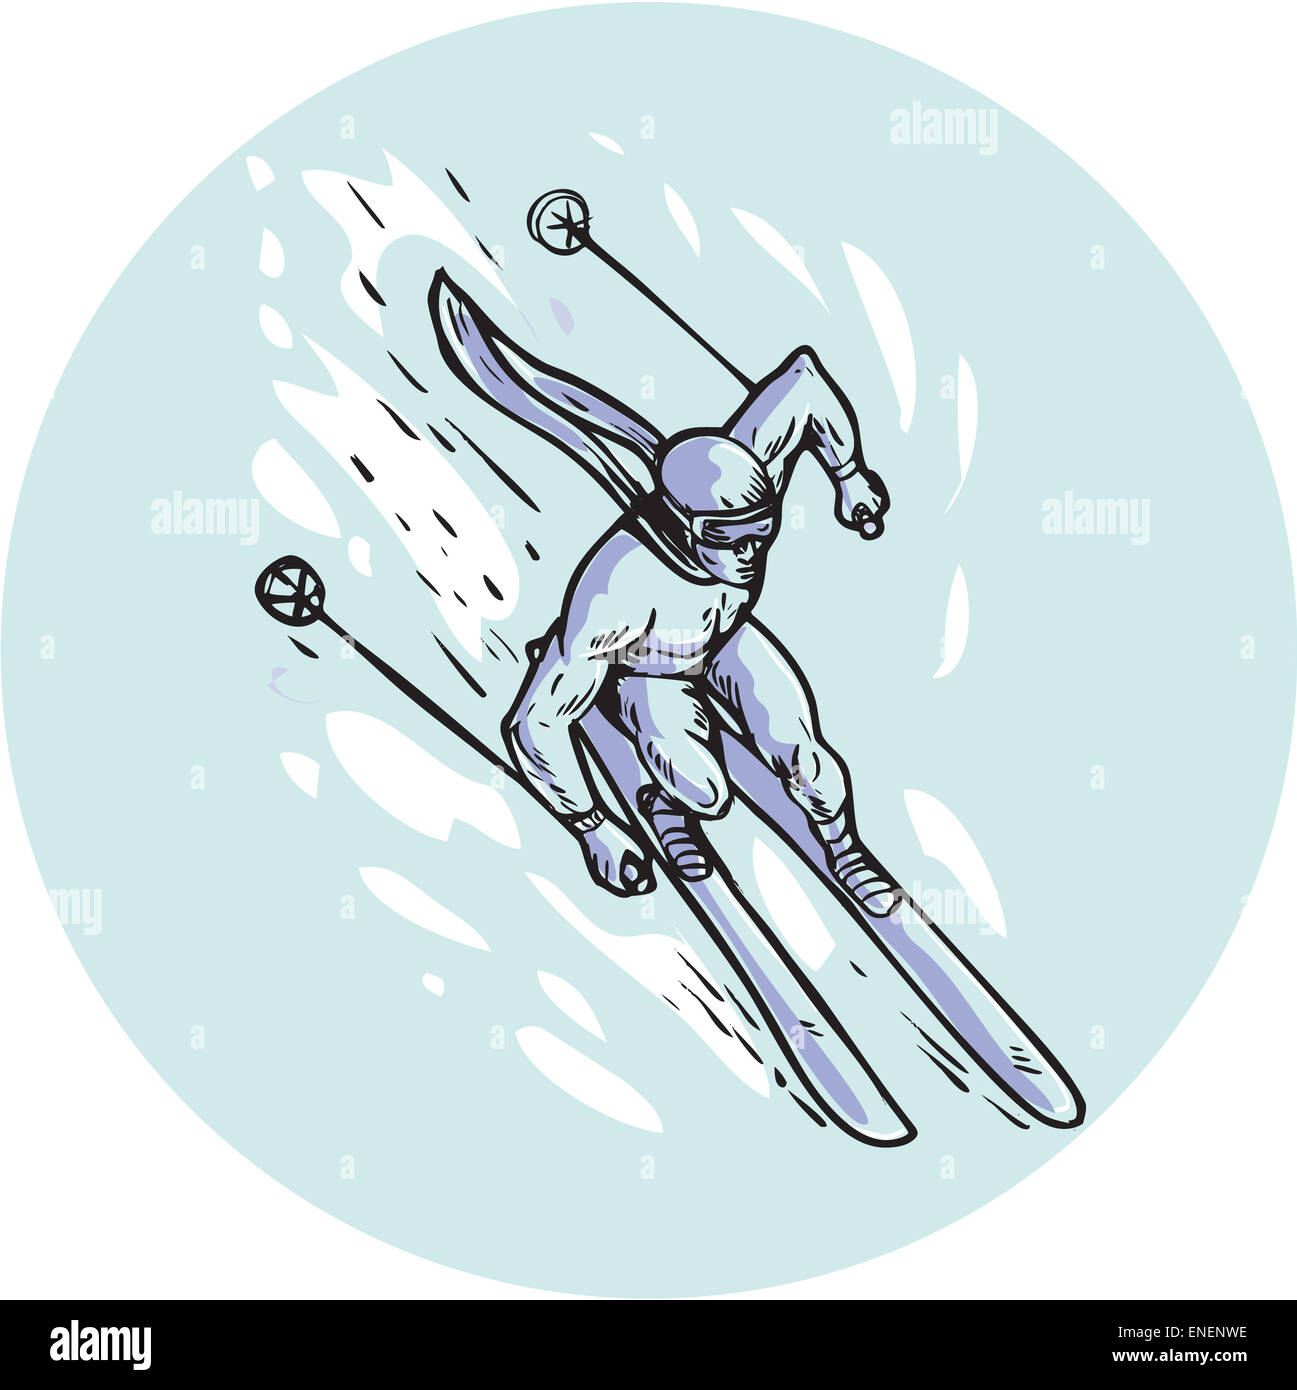 Gravure Gravure illustration style fait main d'un homme qui slaloment ski skieur vu de l'ensemble supérieur à l'intérieur du cercle. Banque D'Images